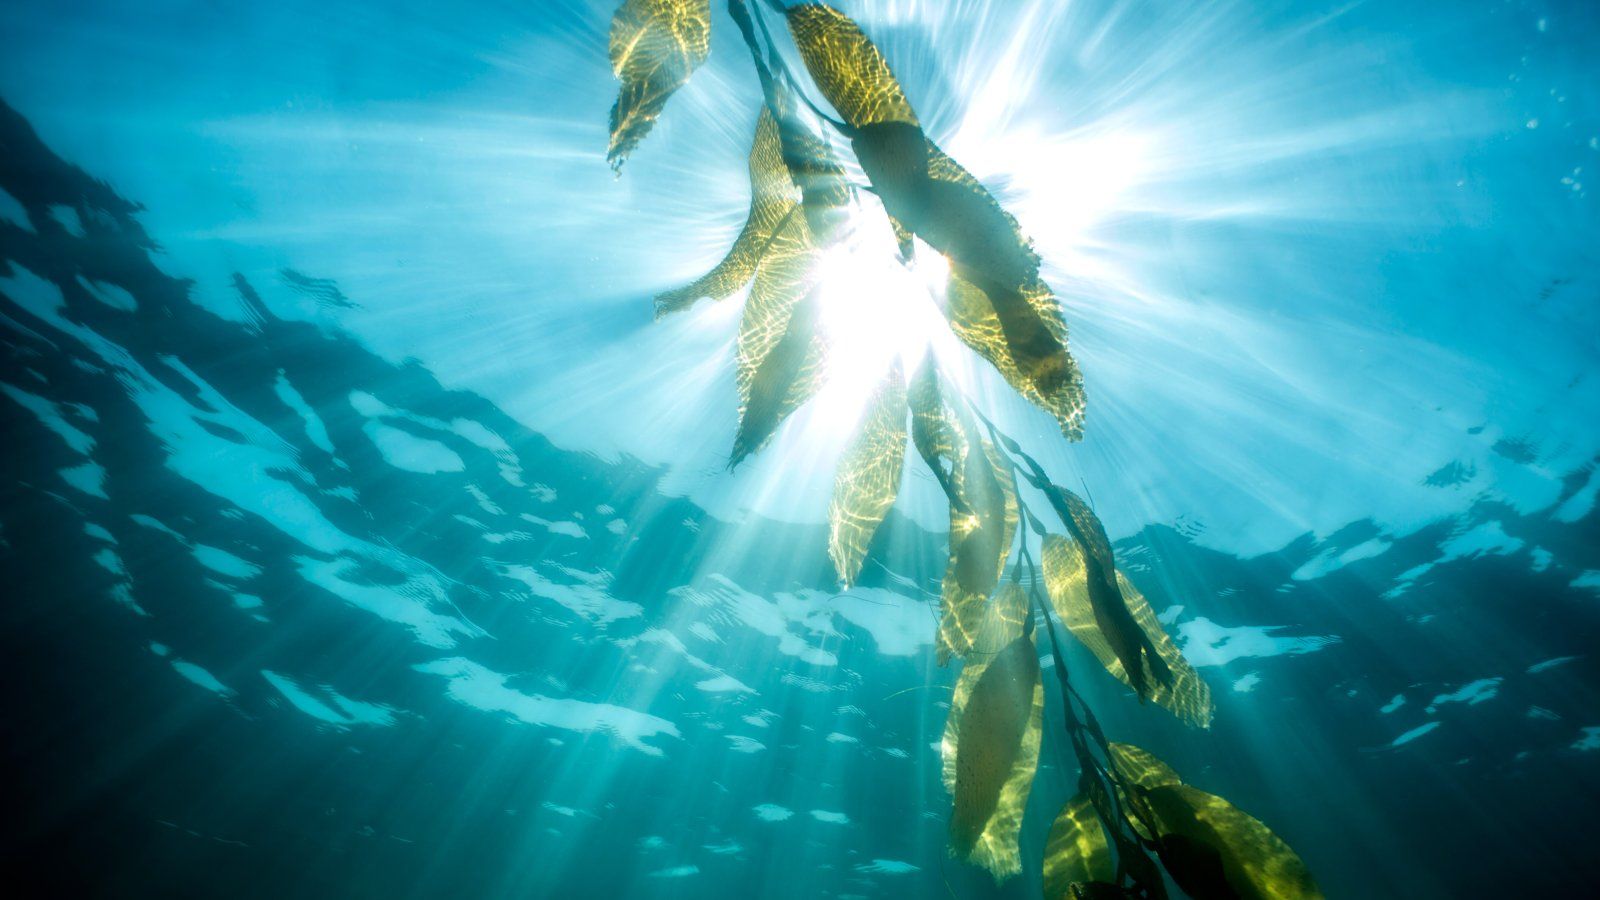 sun filters through a piece of kelp as seen from below.